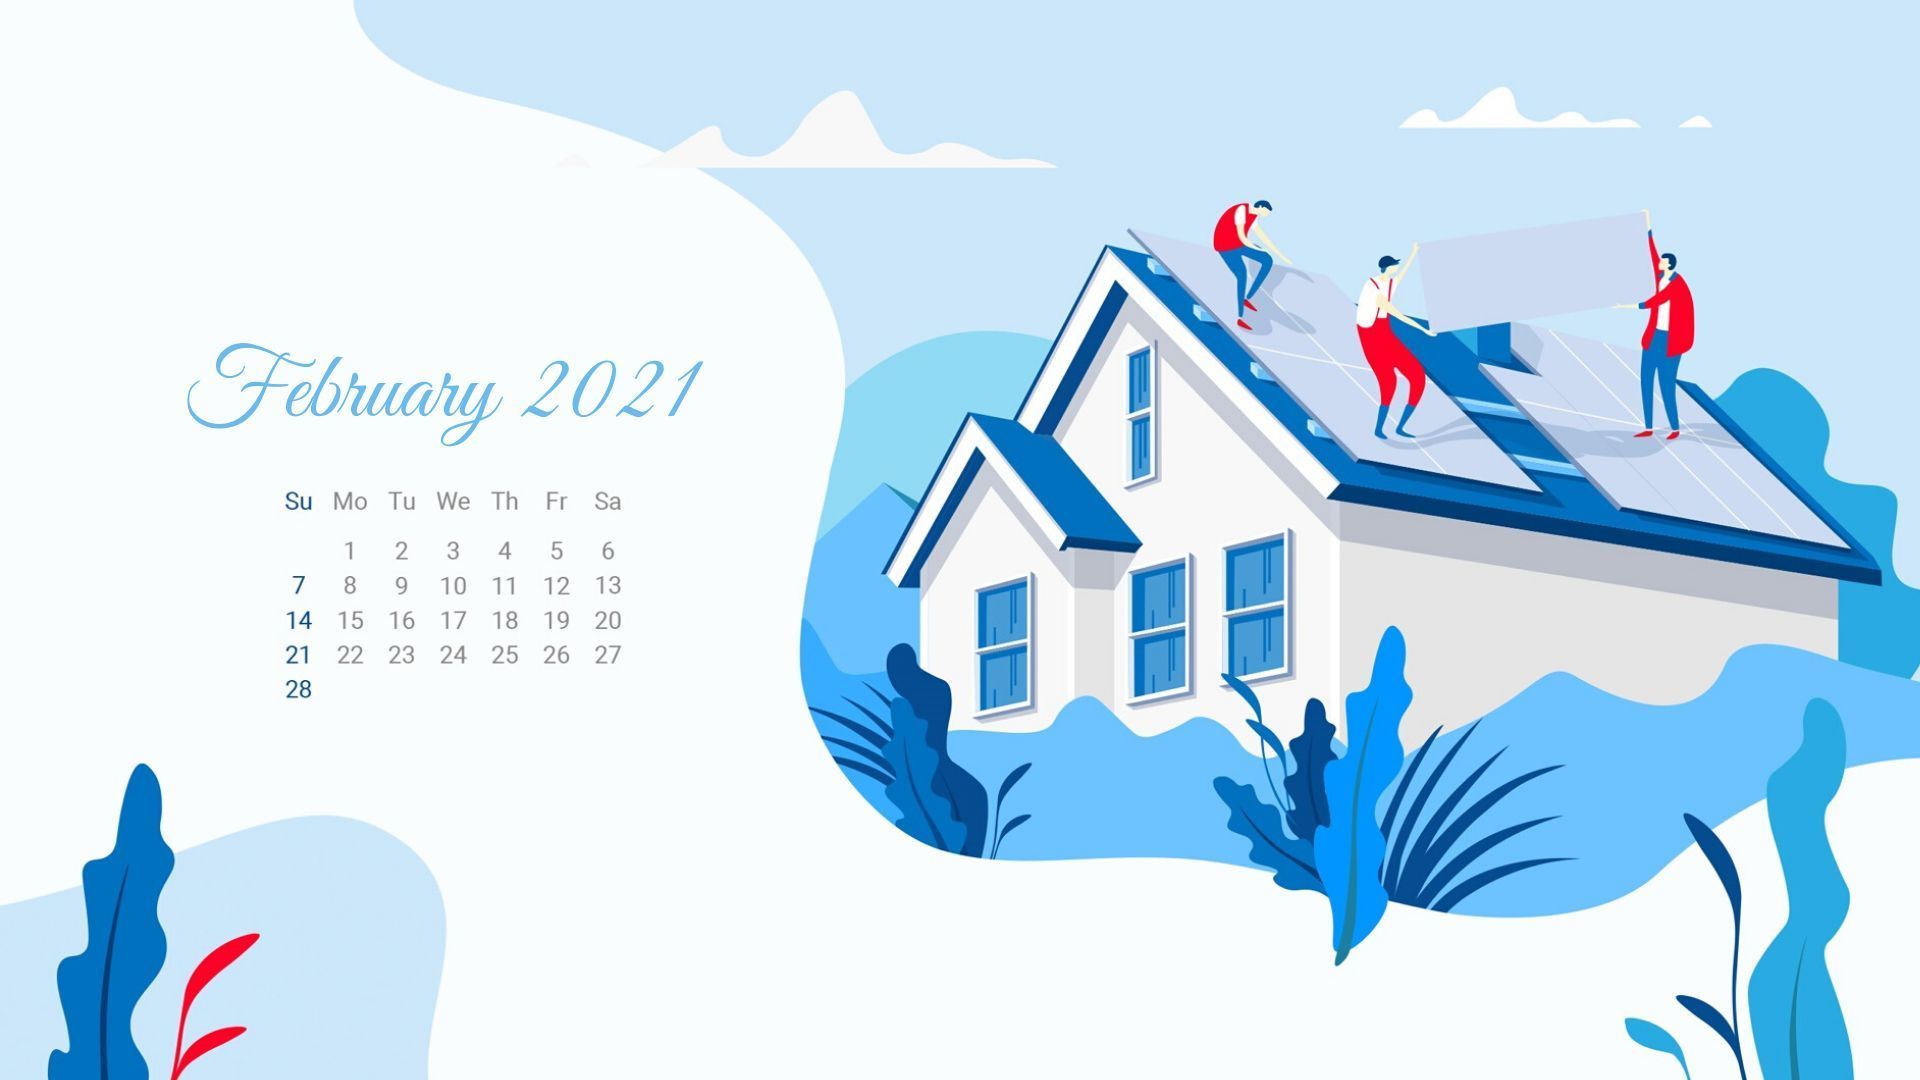 February 2021 Calendar Wallpaper. Calendar wallpaper, 2021 calendar, Wallpaper